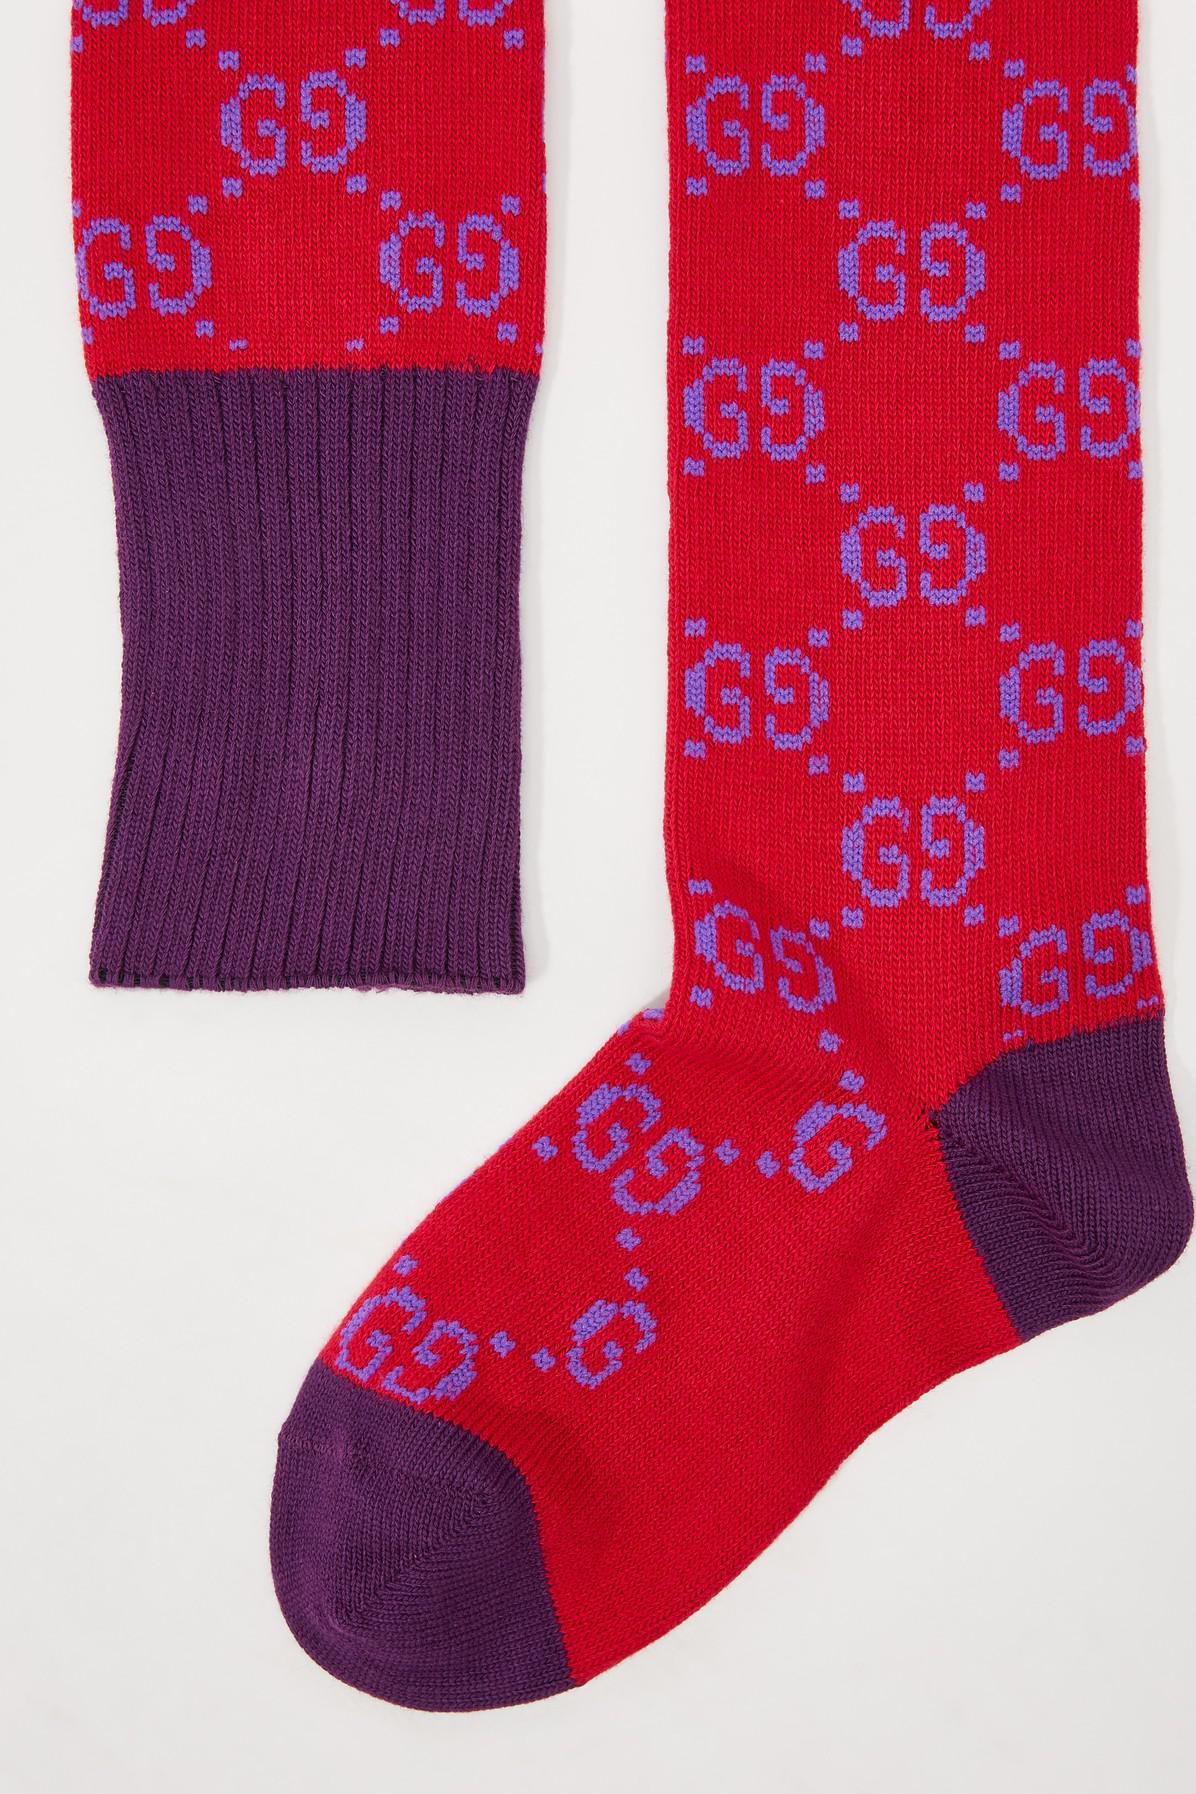 Gucci Cotton GG Socks in Red/Purple 